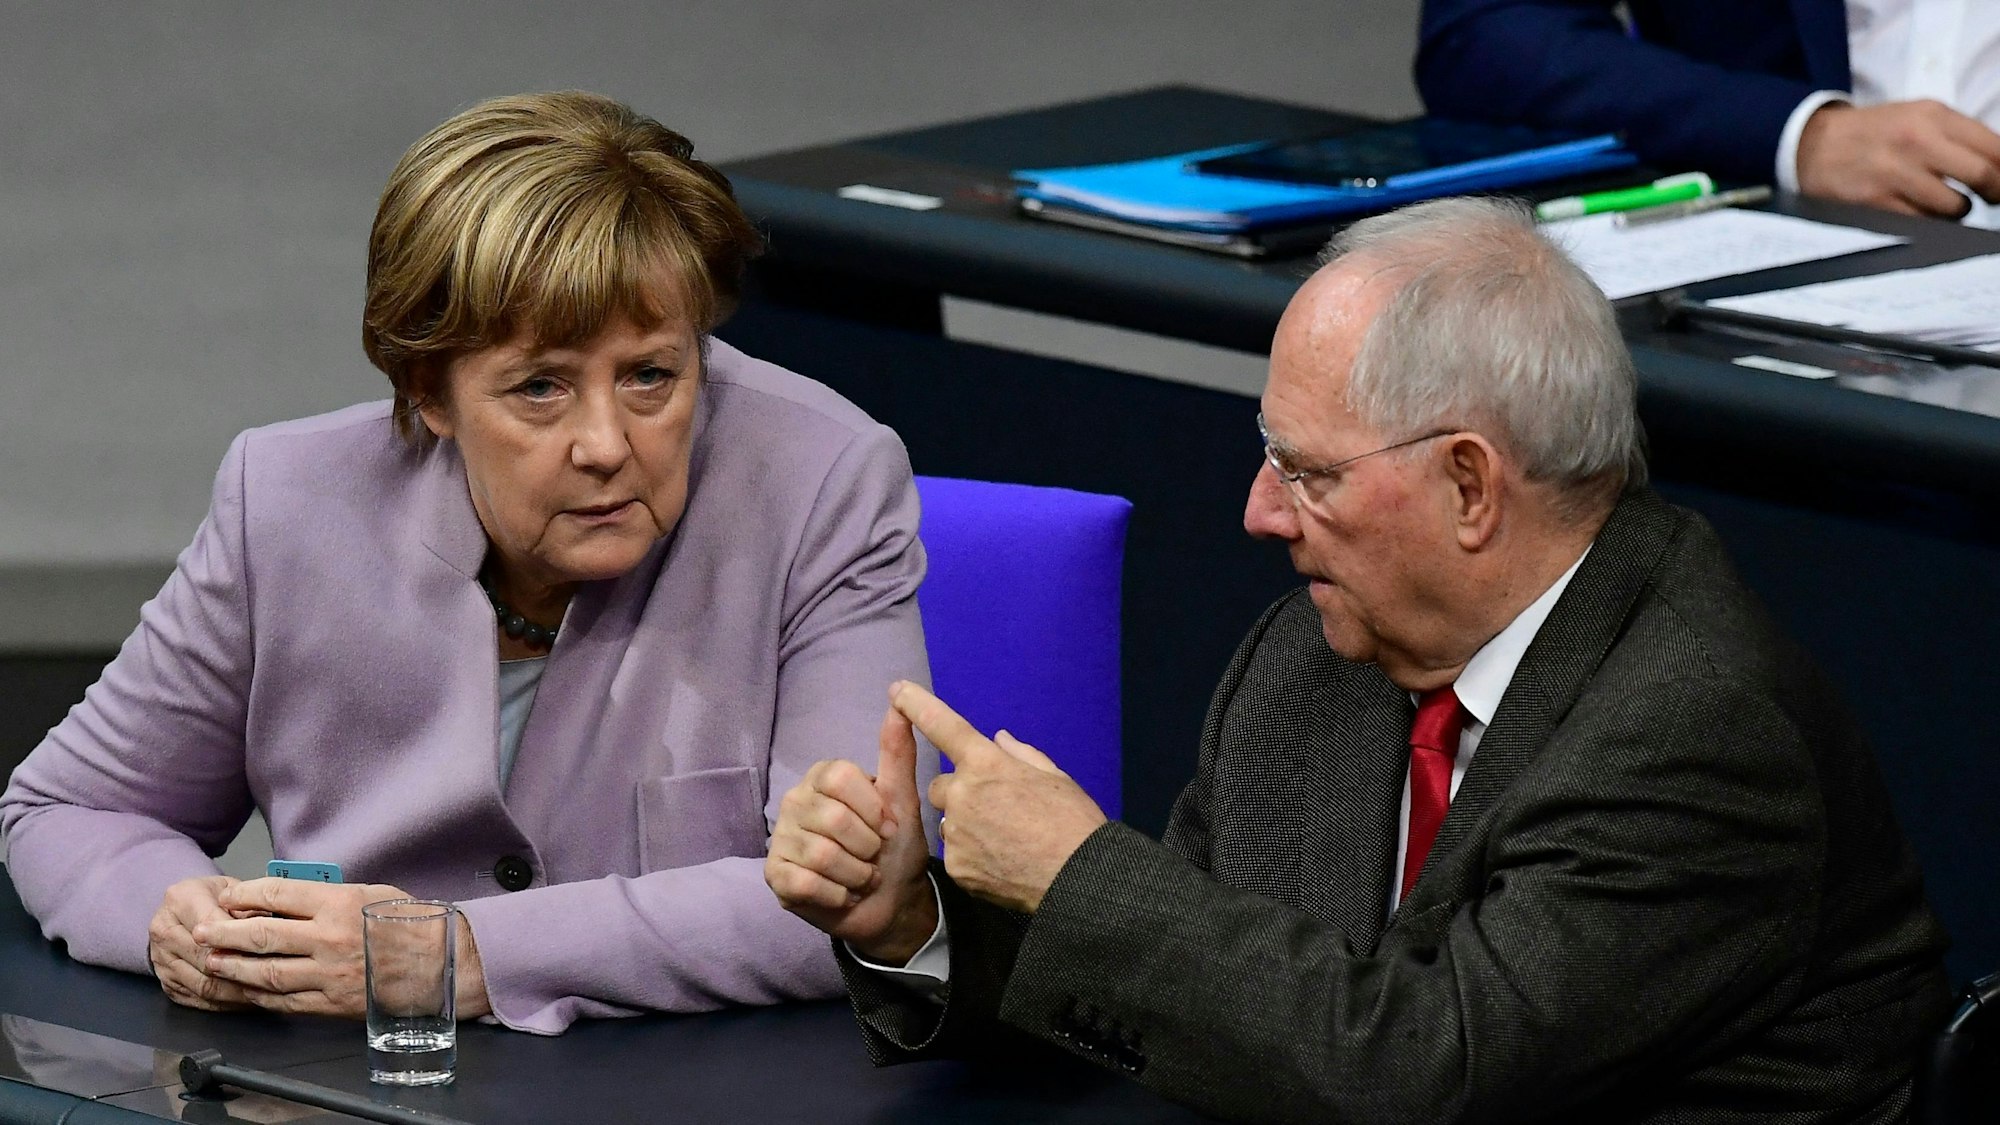 Die damalige Bundeskanzlerin Angela Merkel spricht mit dem damaligen Bundesfinanzminister Wolfgang Schäuble während einer Sitzung des Bundestages in Berlin am 25. November 2016, während einer Woche der Haushaltsdebatte.